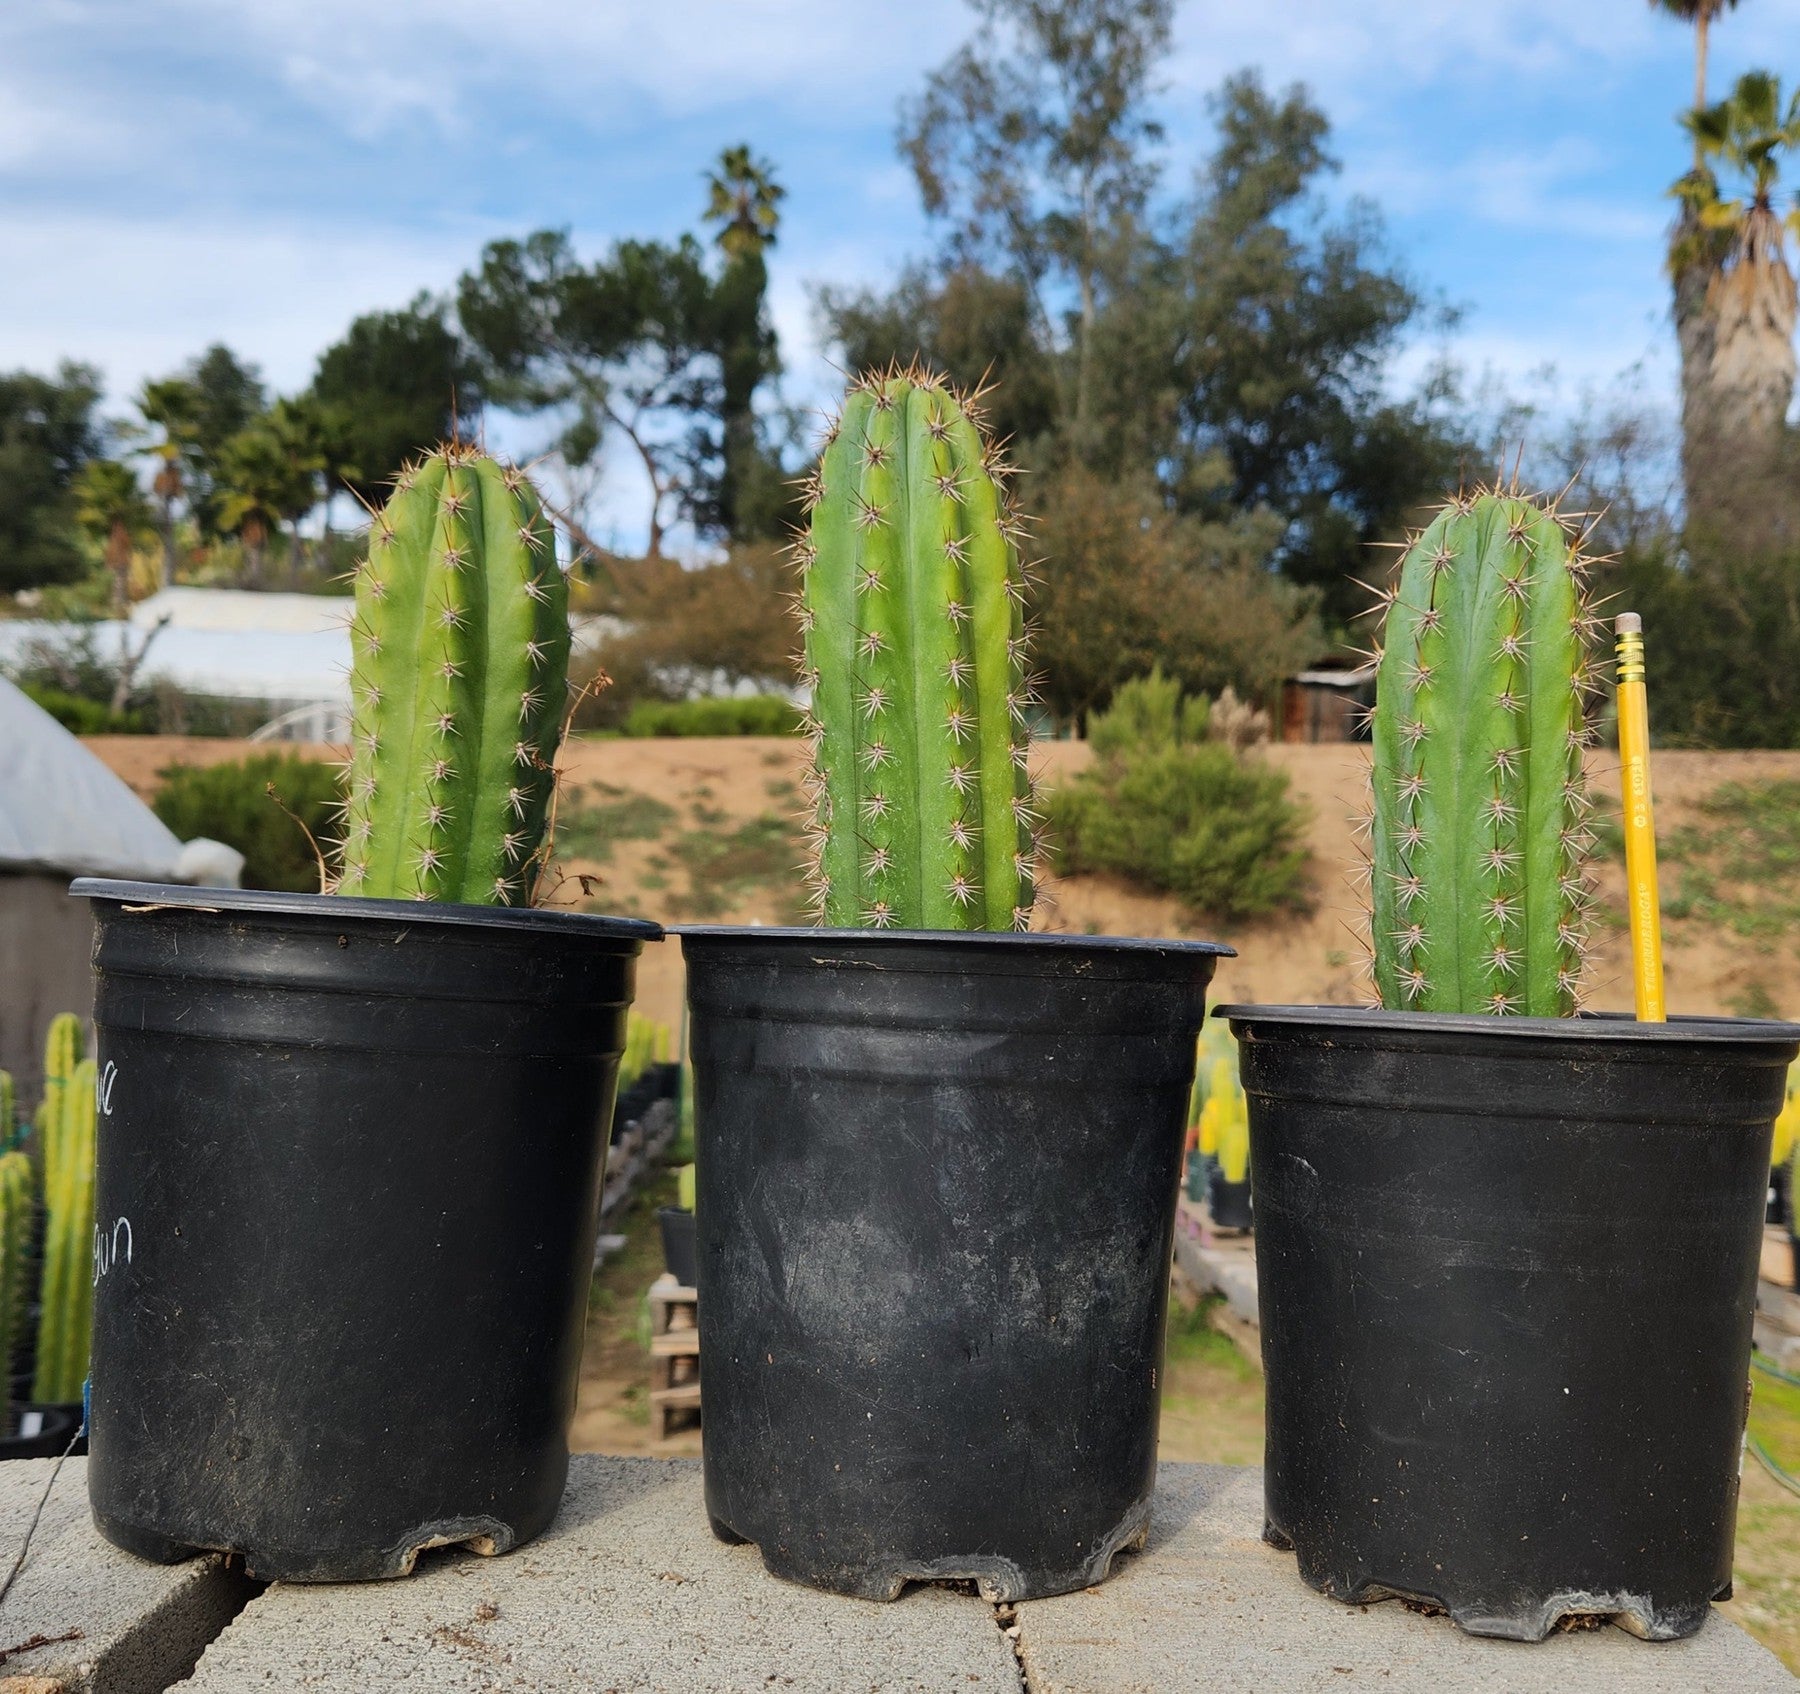 #EC245 EXACT Trichocereus Hybrid Peruvianus Peru Blue3 X KT Ogun Cactus 7-8"-Cactus - Large - Exact-The Succulent Source